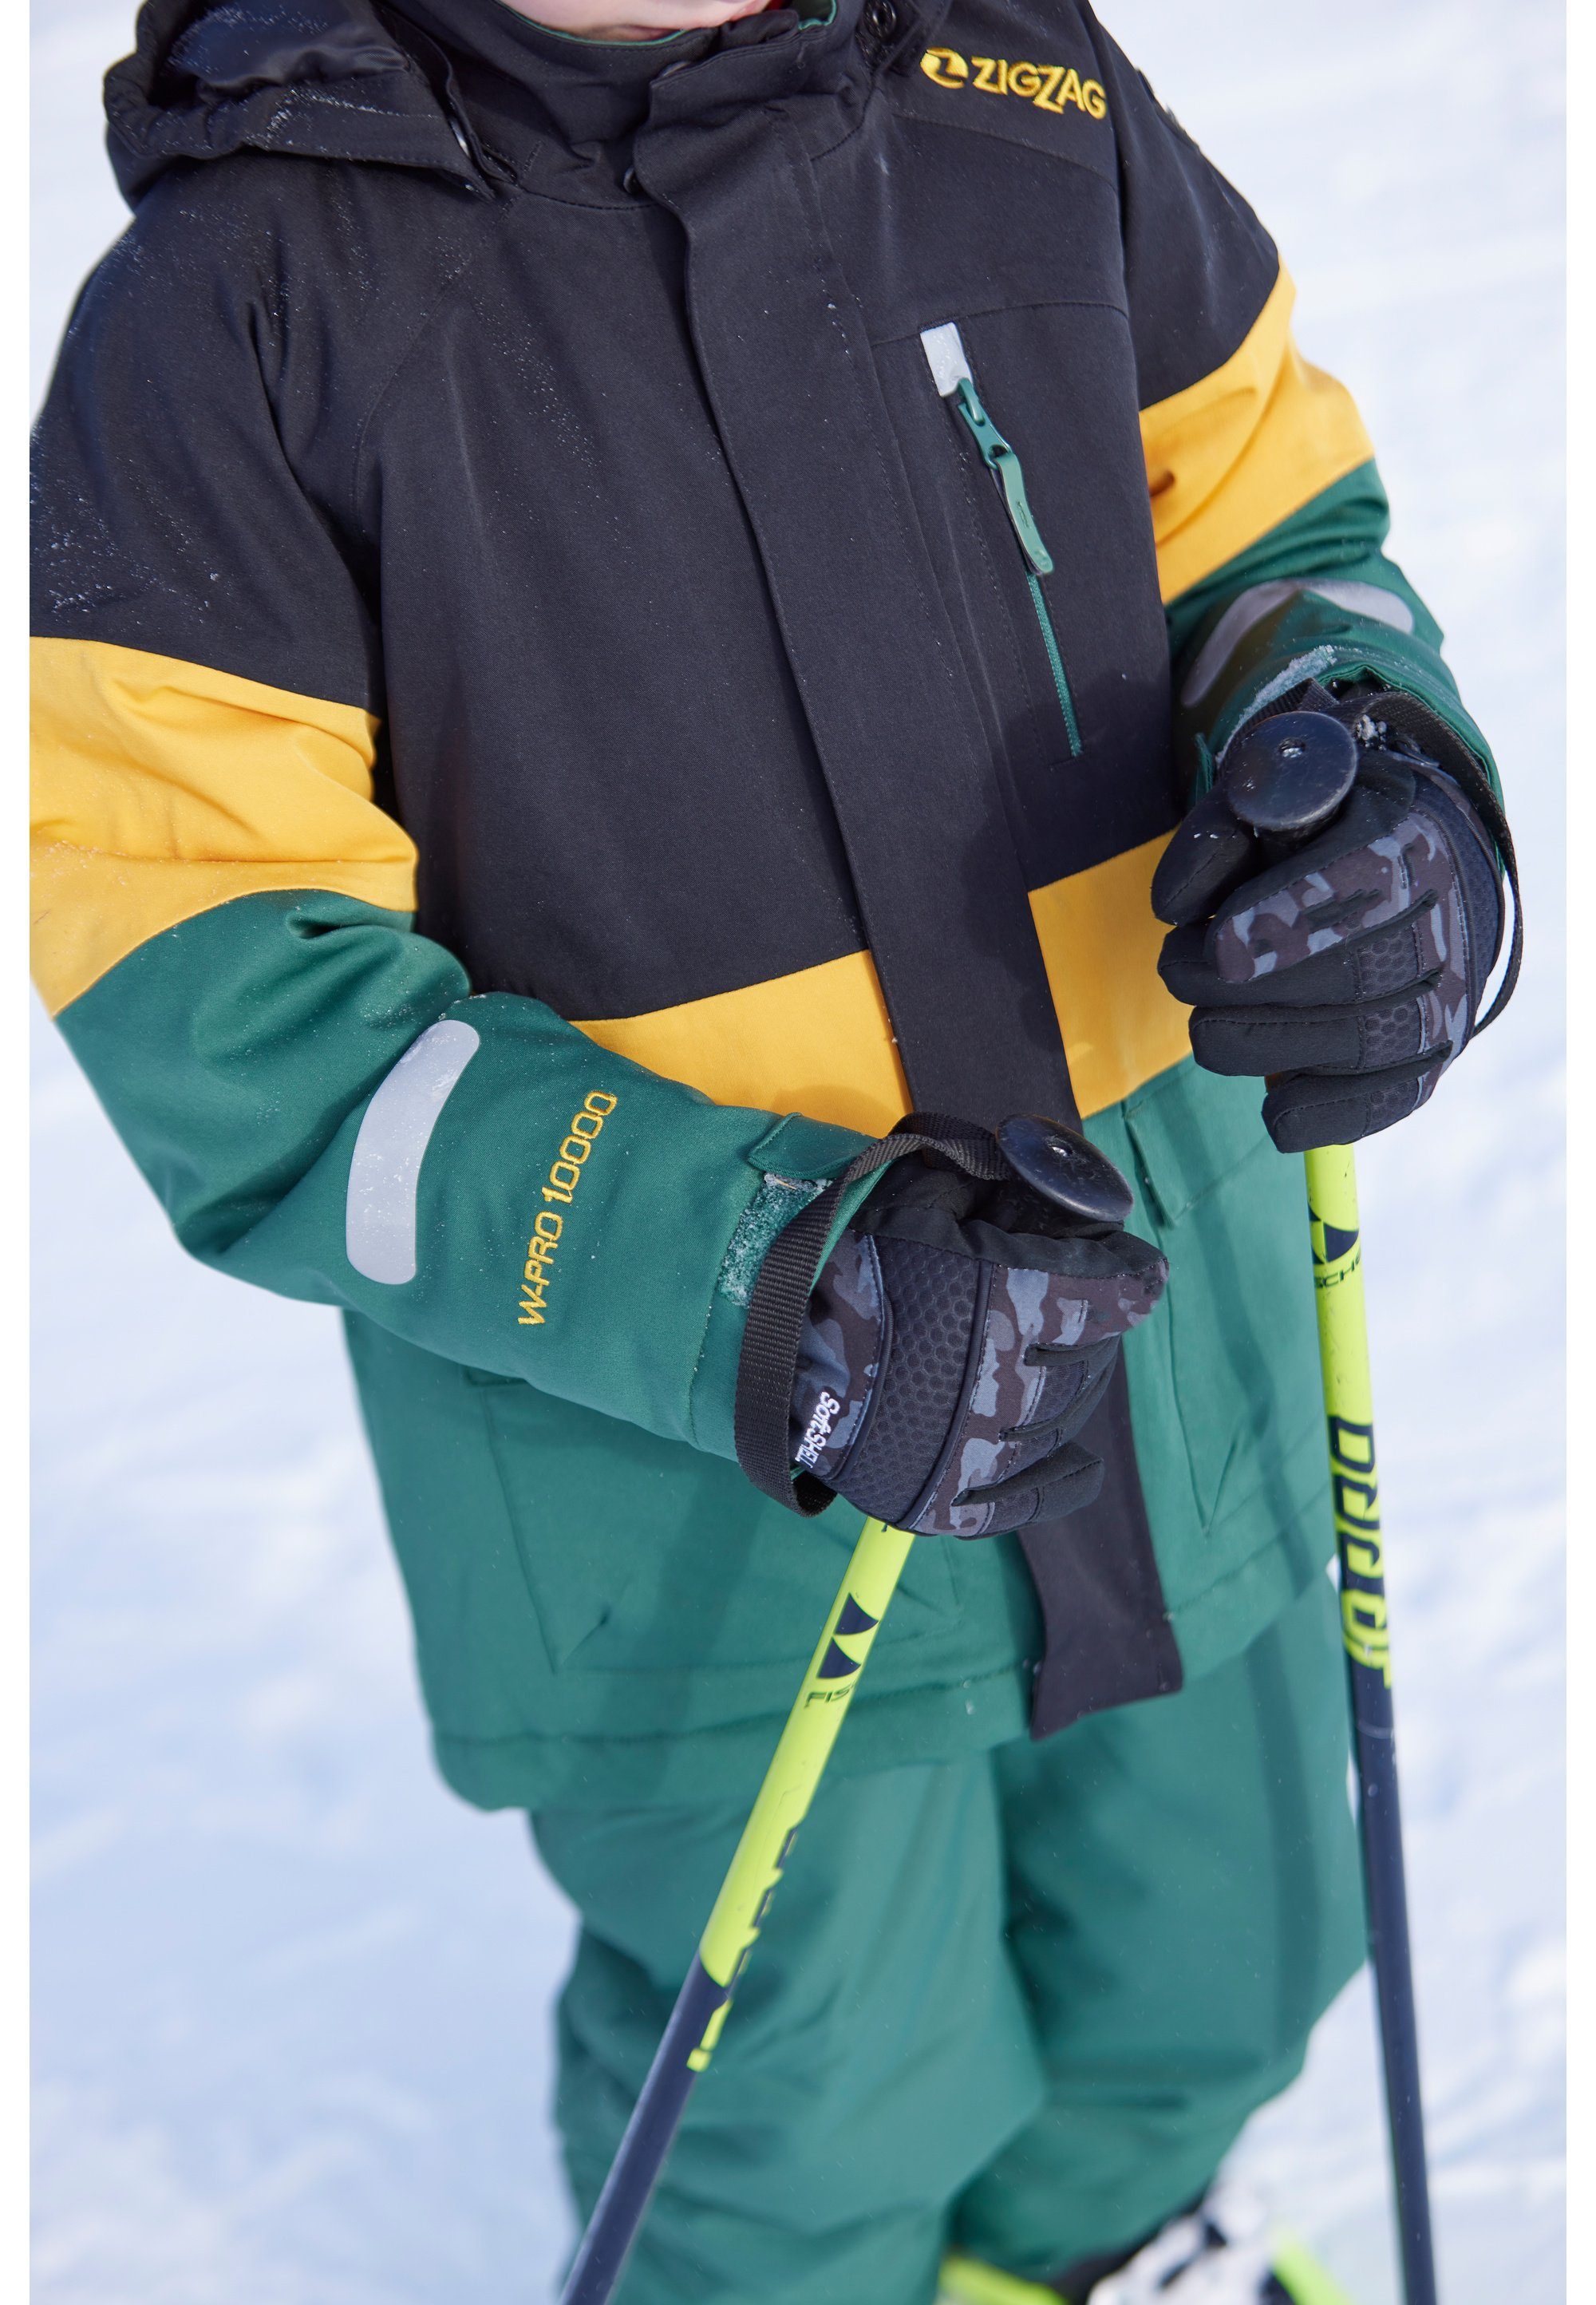 ZIGZAG Skijacke Taylora mit wind- und TPU-Membran dunkelgrün wasserdichter